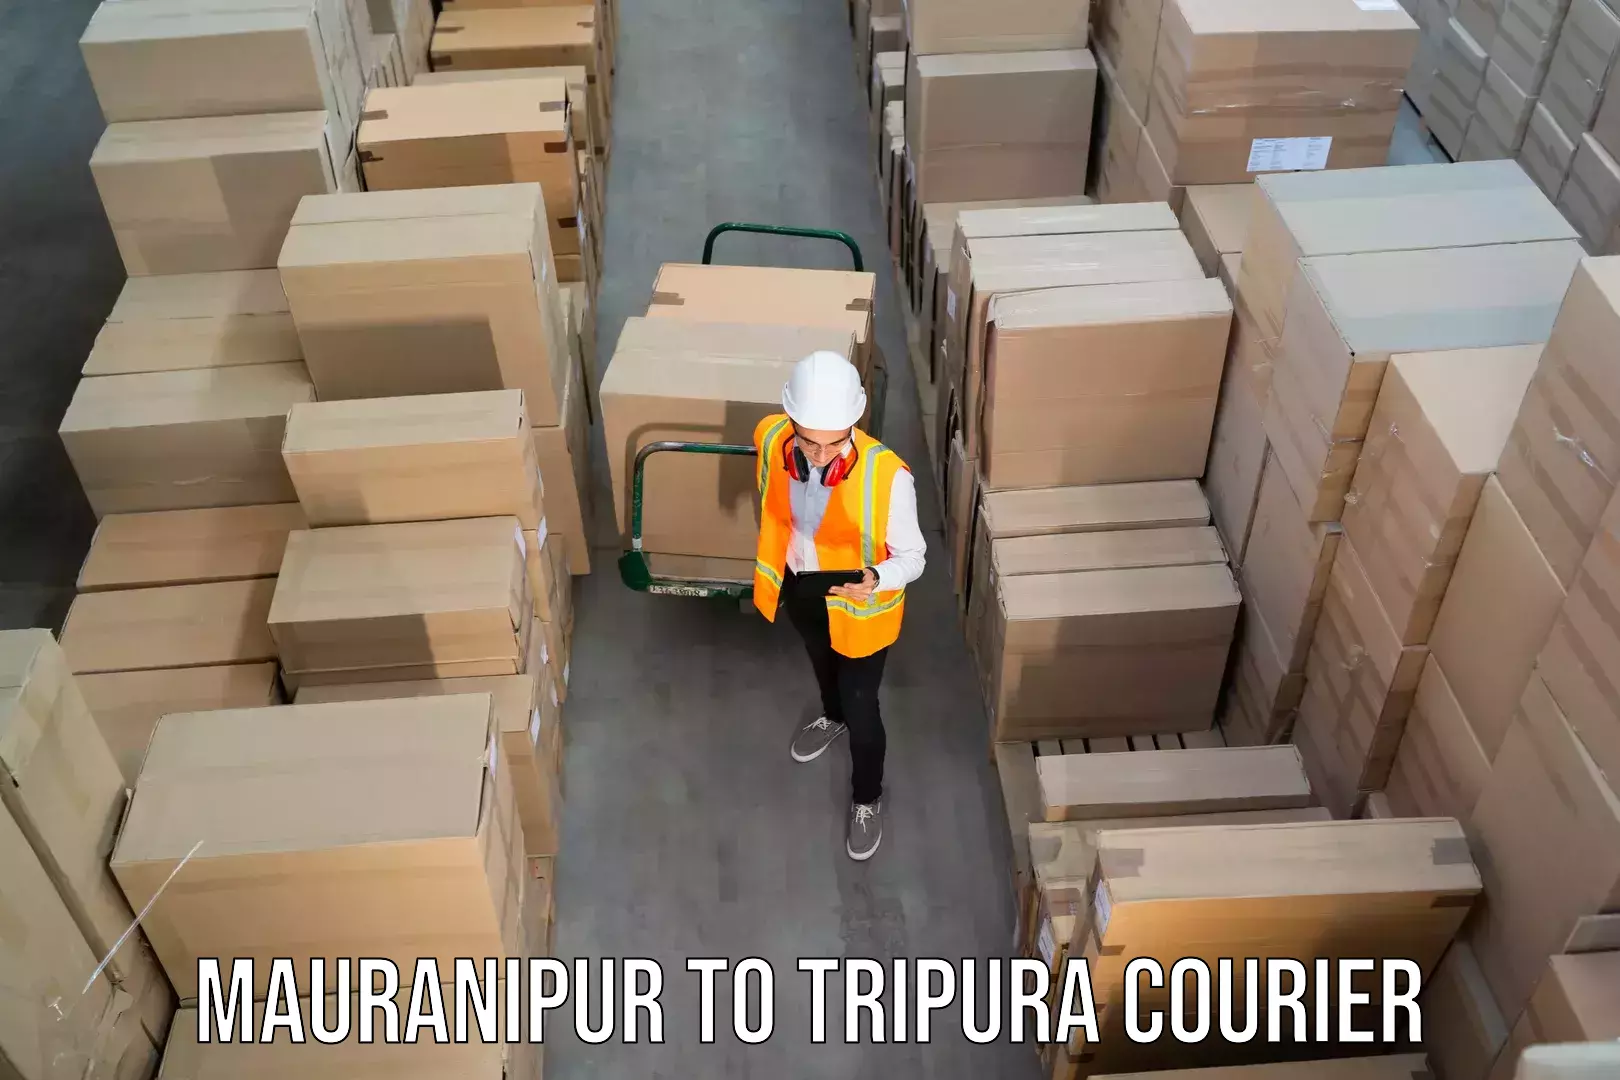 Premium courier solutions Mauranipur to Teliamura